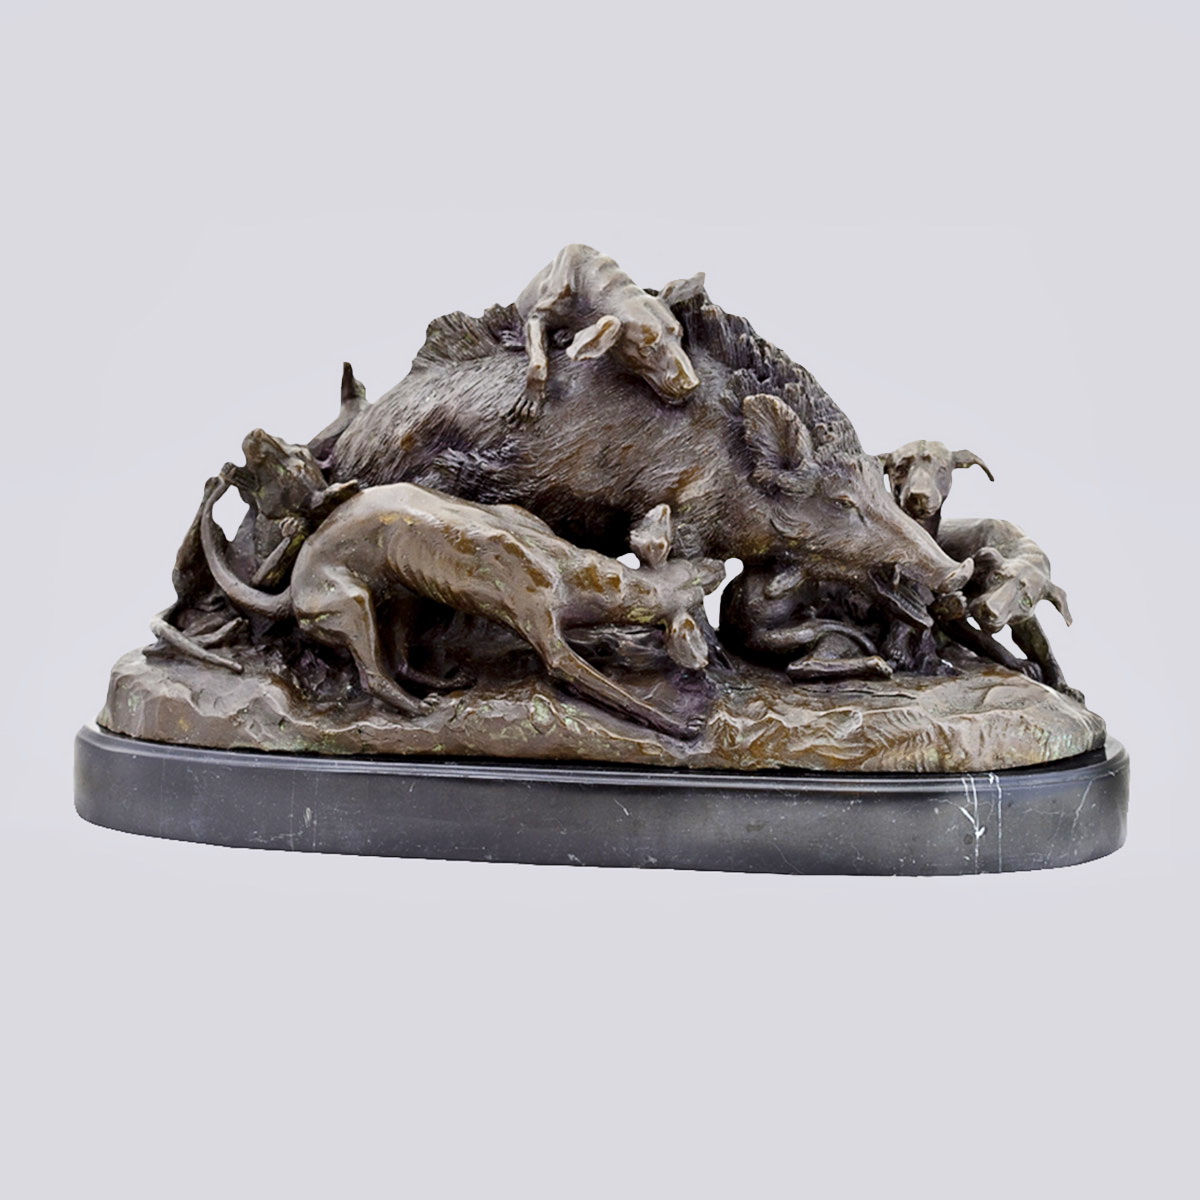 Скульптурная композиция «Травля кабана собаками» из бронзы 19-20 вв. (A. Lecourtier, Франция)